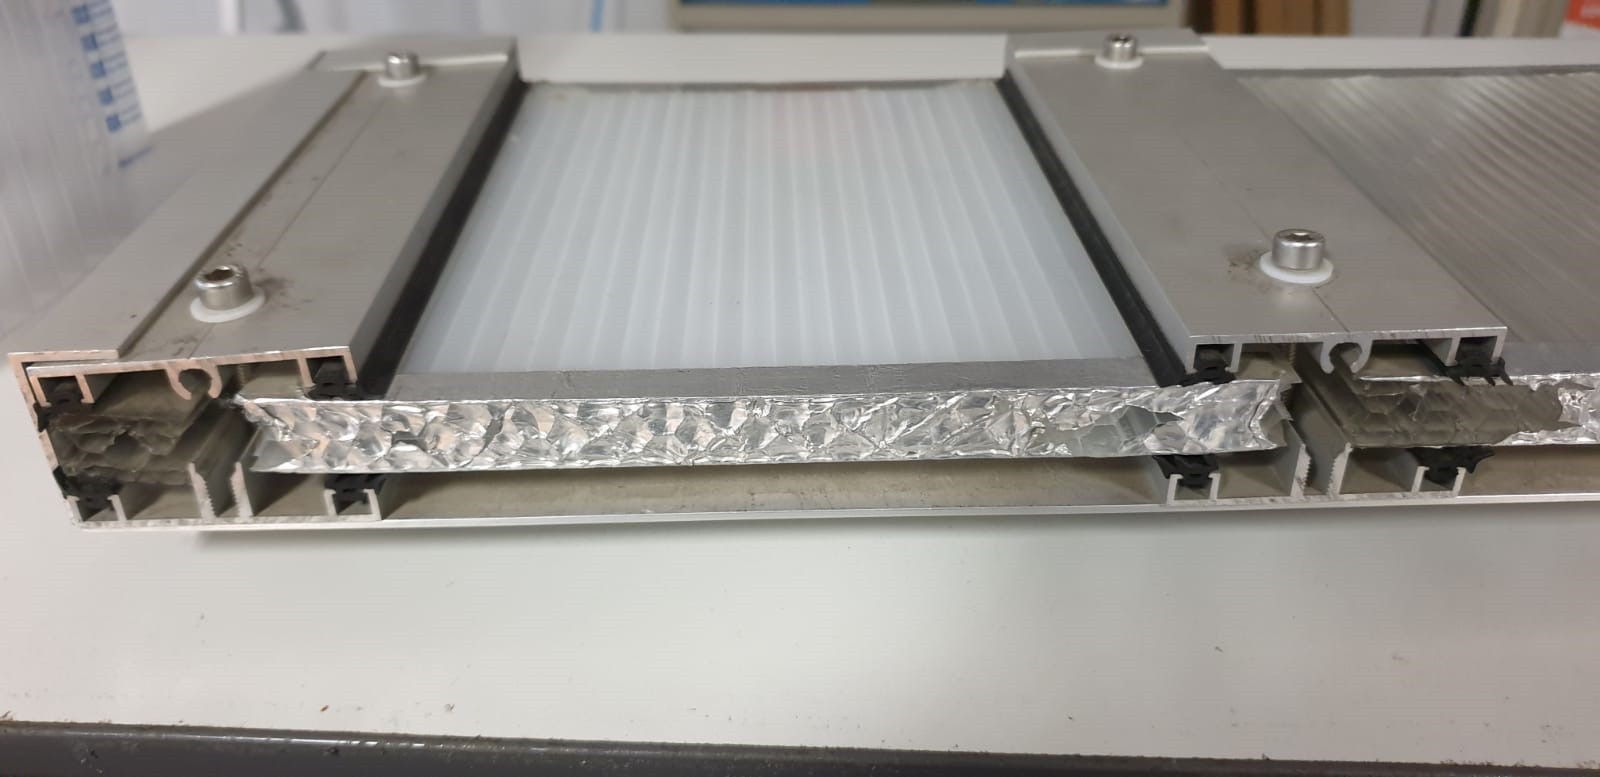 Plaque de toiture plat polycarbonate translucide l.0.98xL.3m, ep.16mm